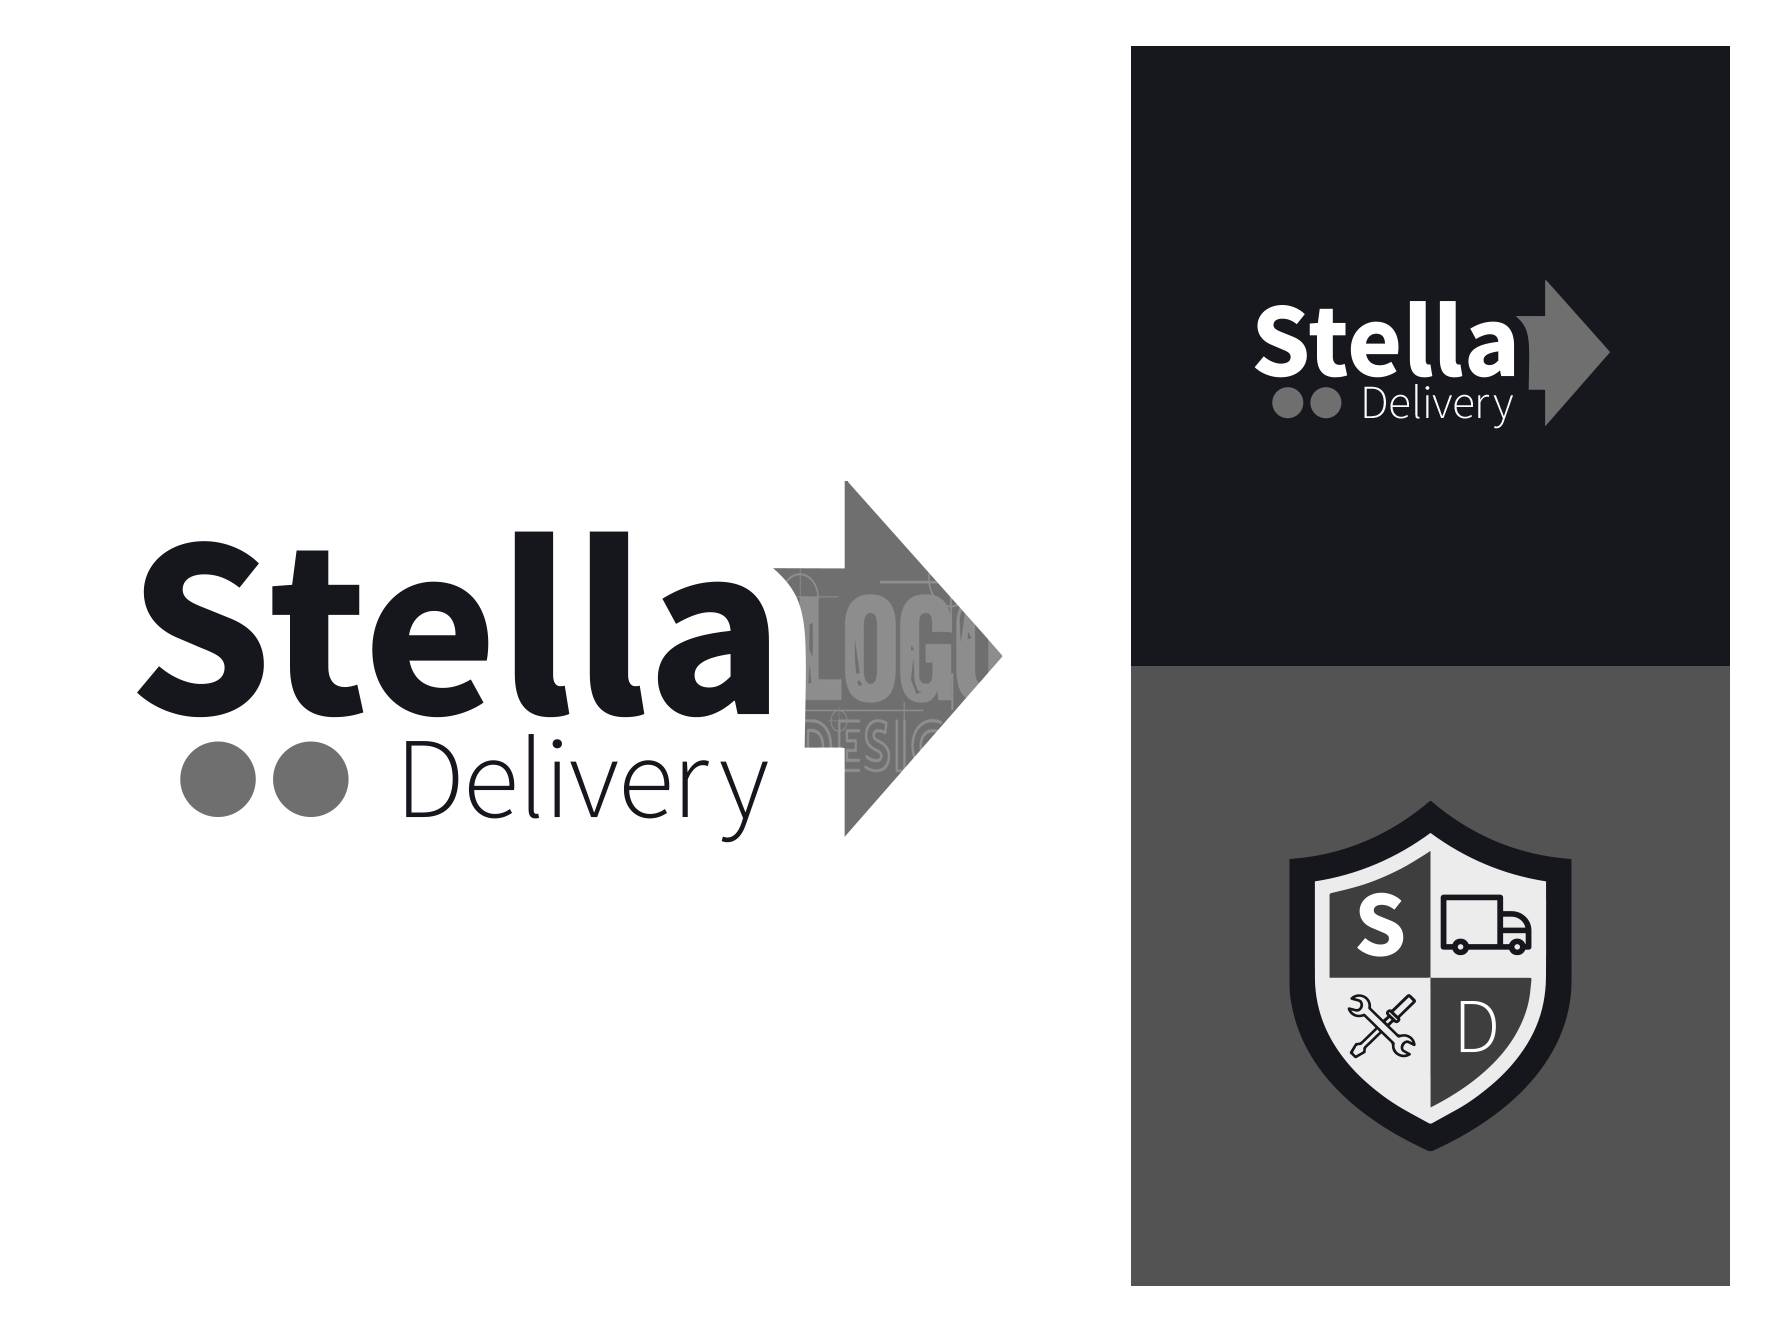 logo design services for a logistics company